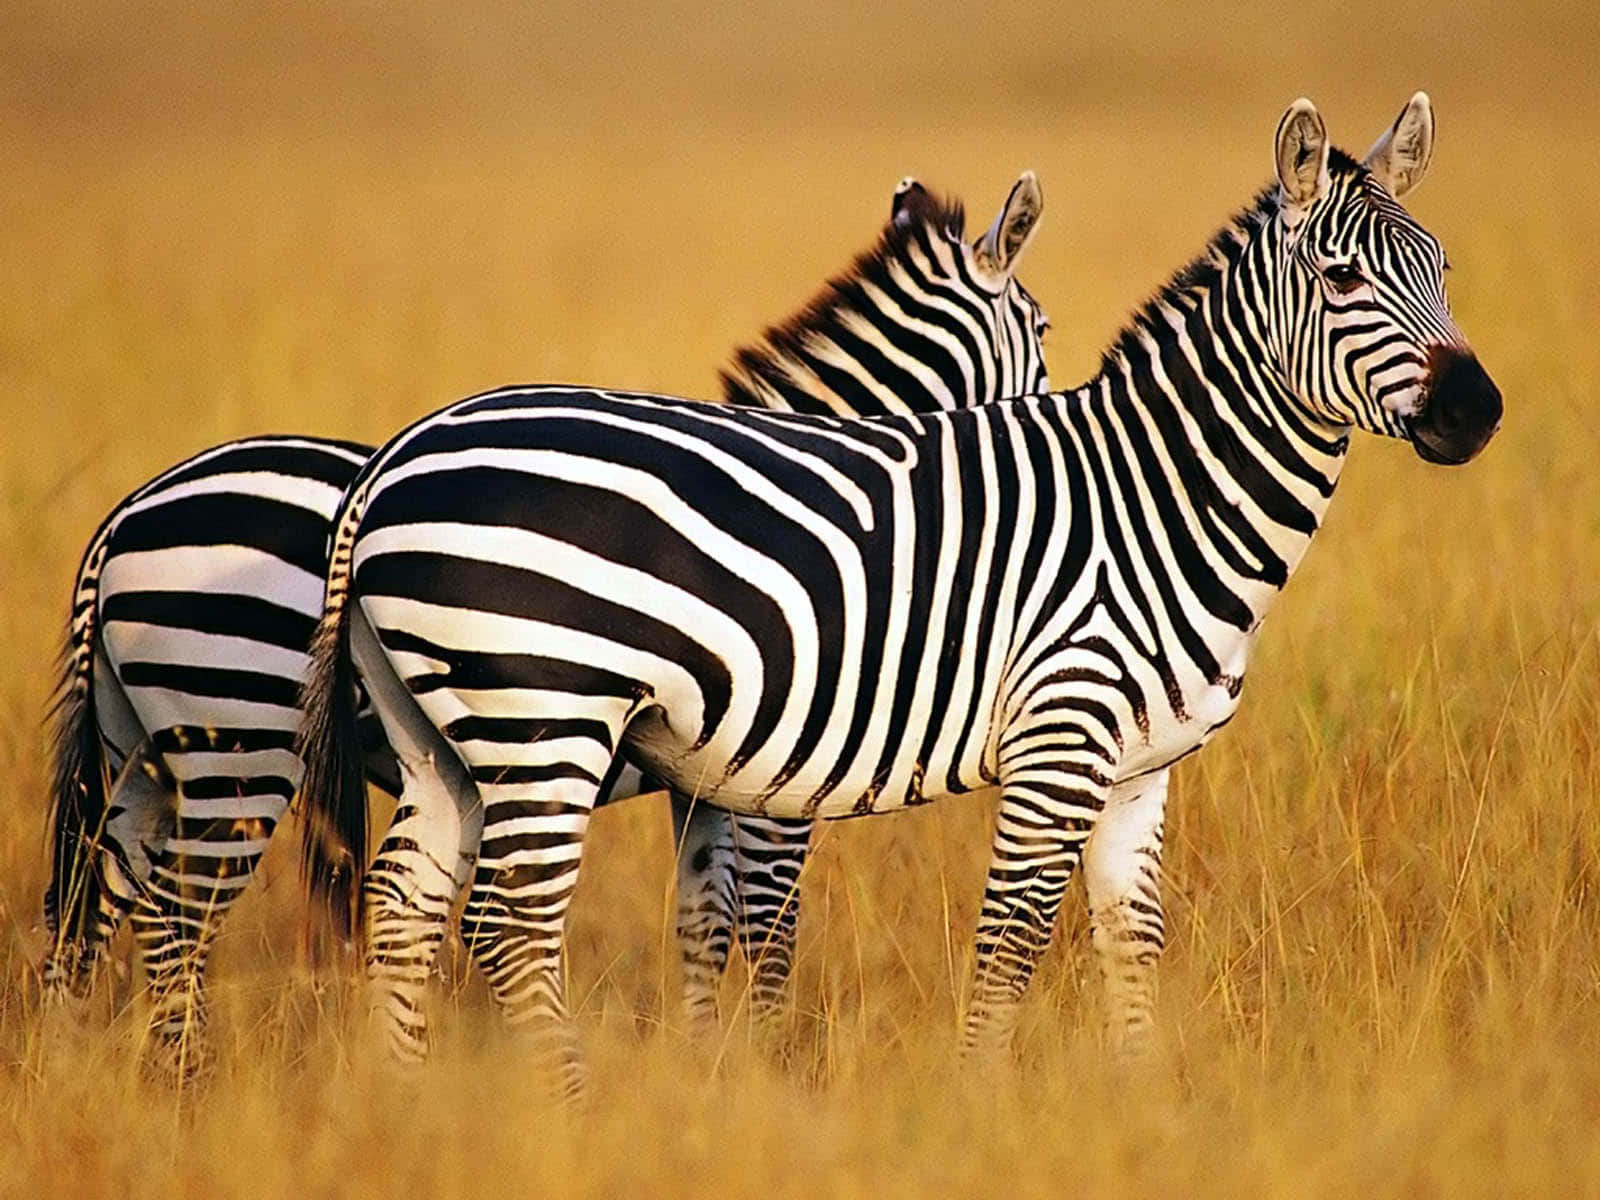 Umbando De Zebras Reunidas Na Savana.